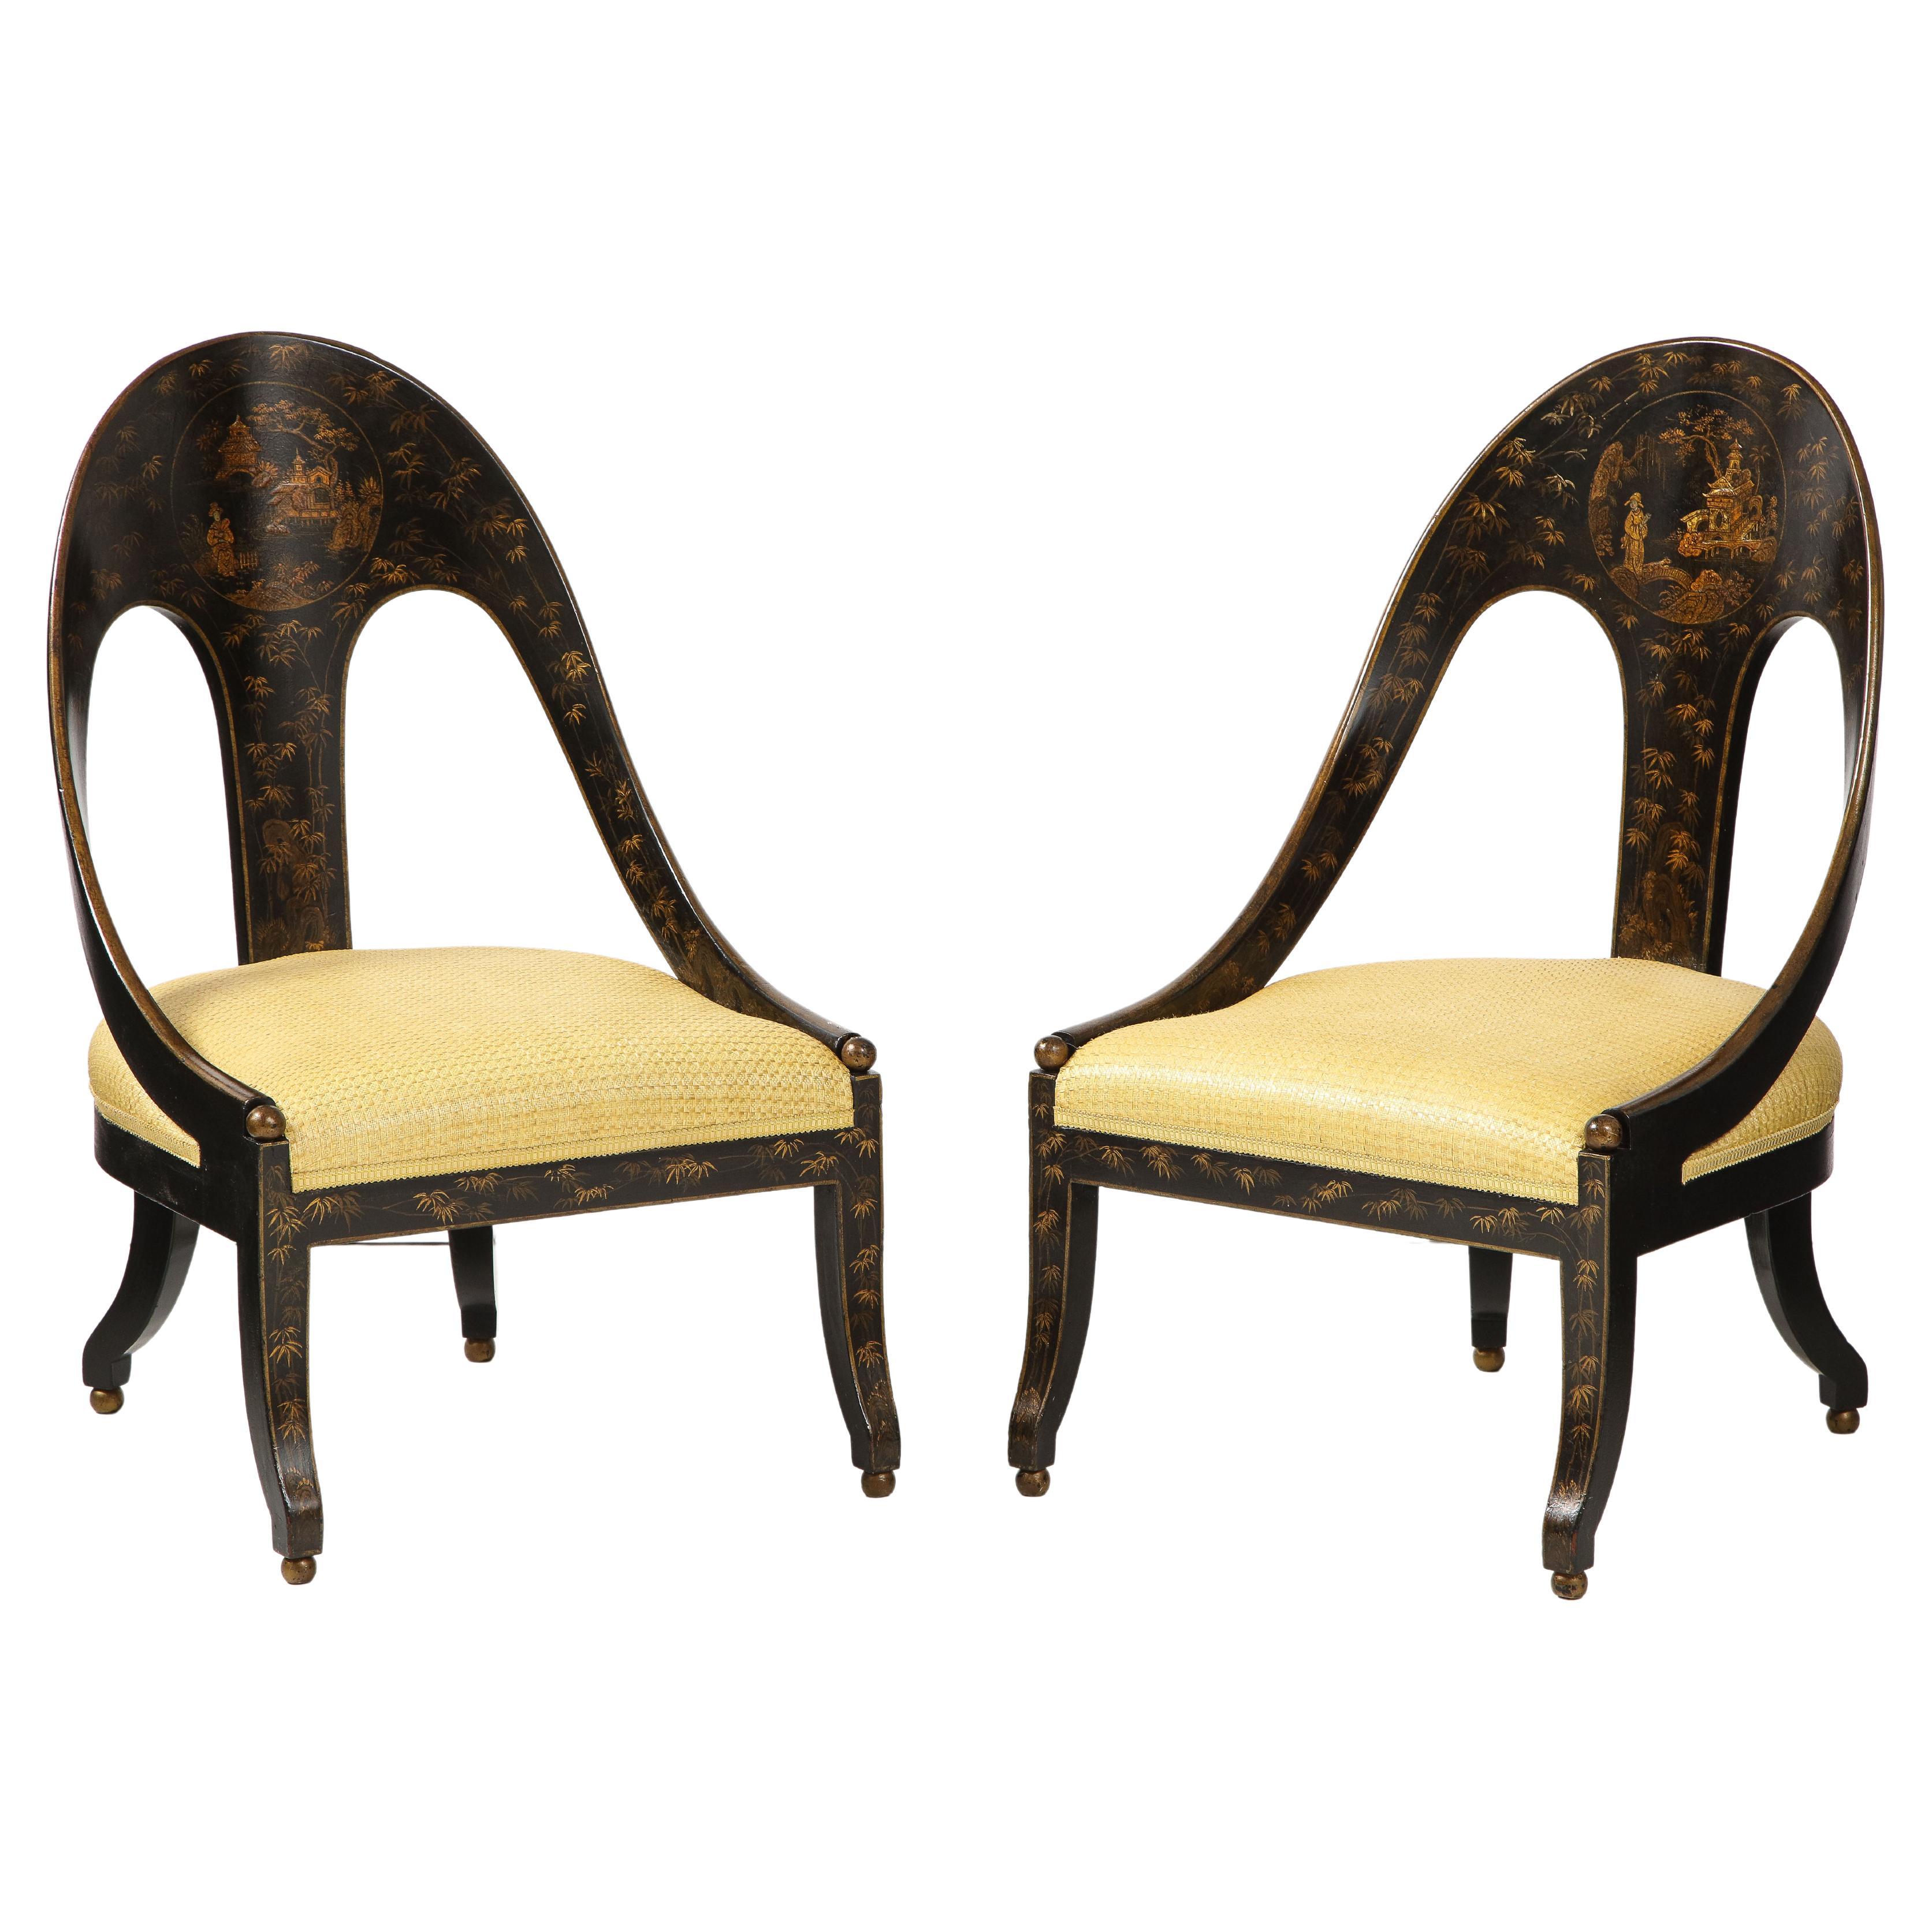 Pair of Regency Style Spoon Chairs